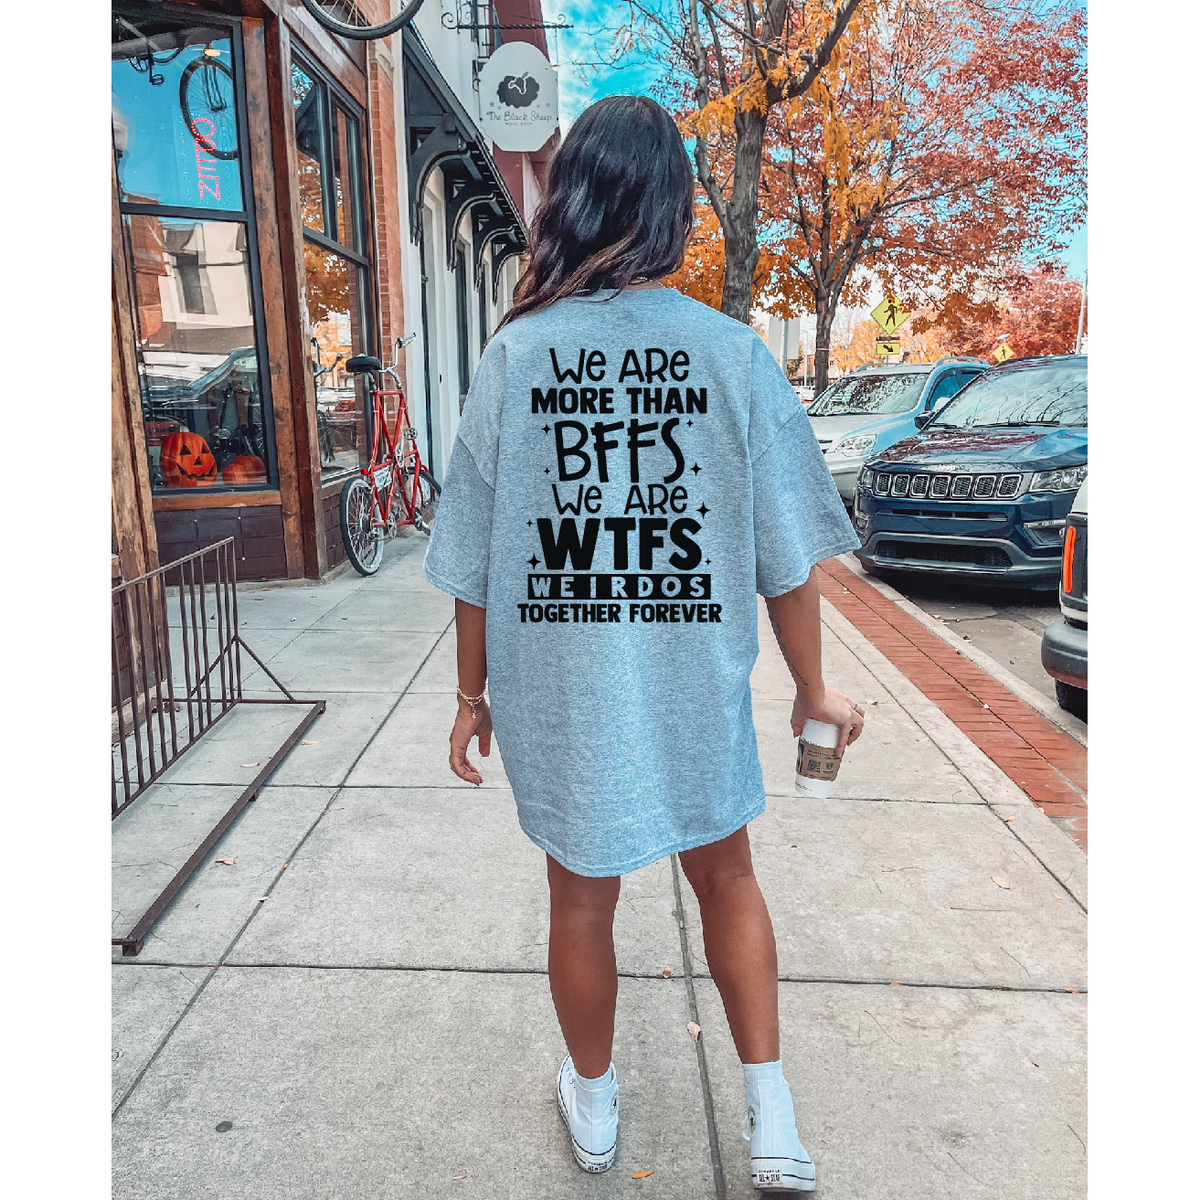 Bffs WTFS tee or sweatshirt